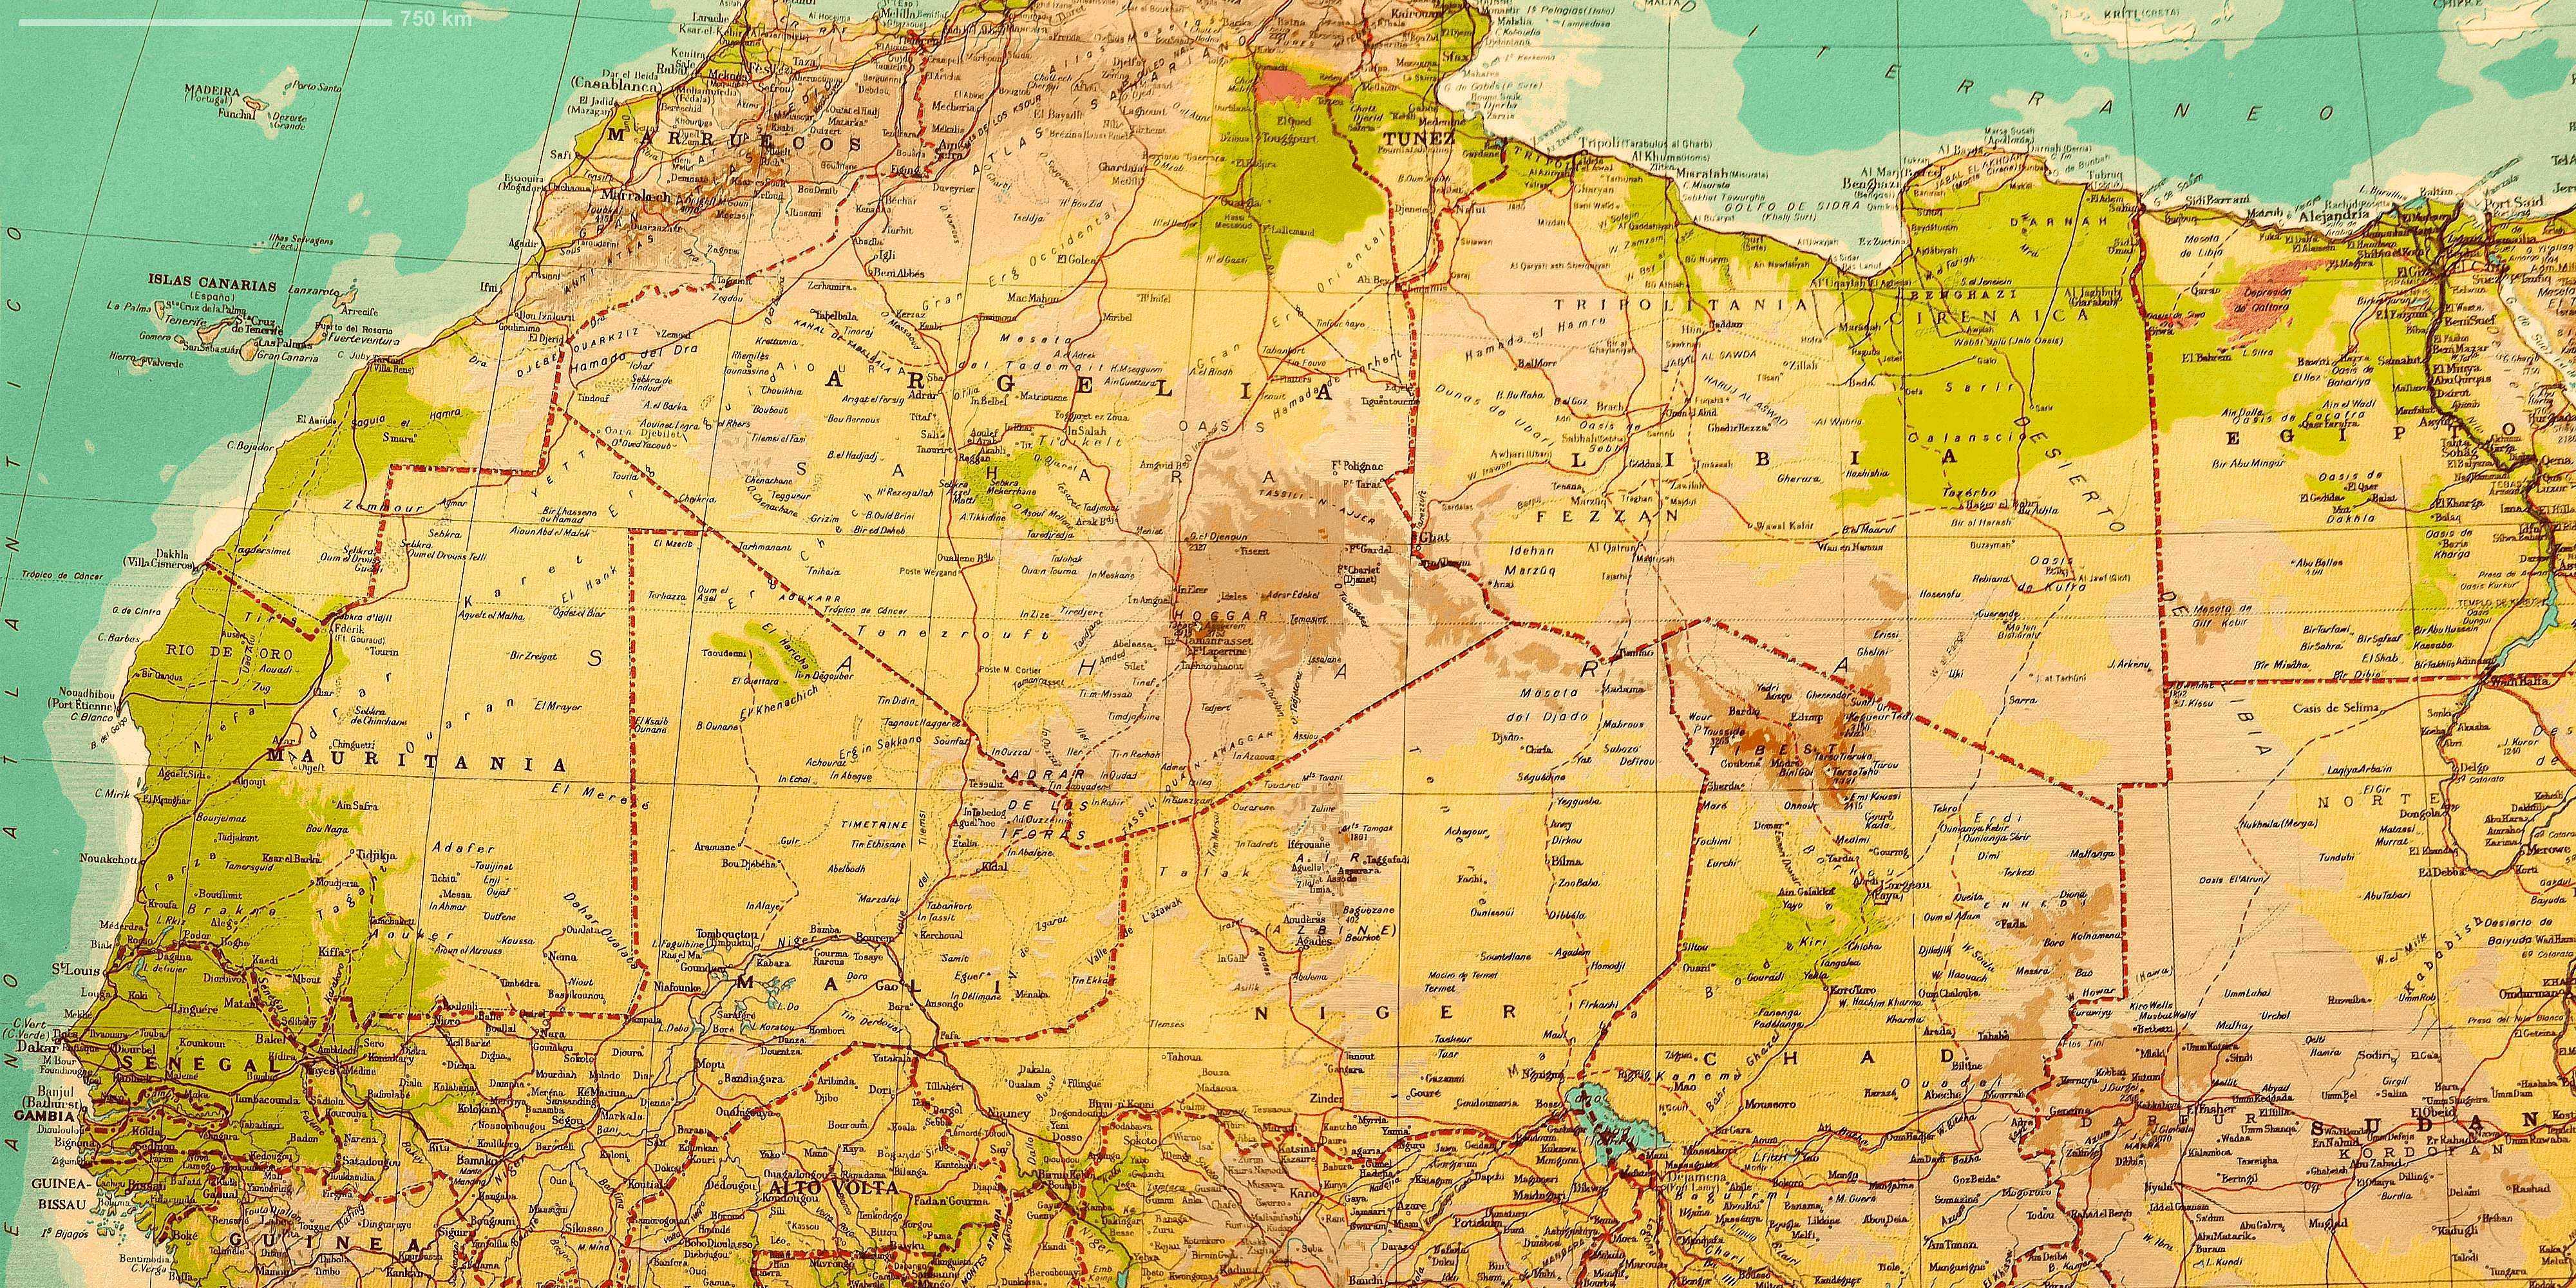 Sahara Territory :: Maps